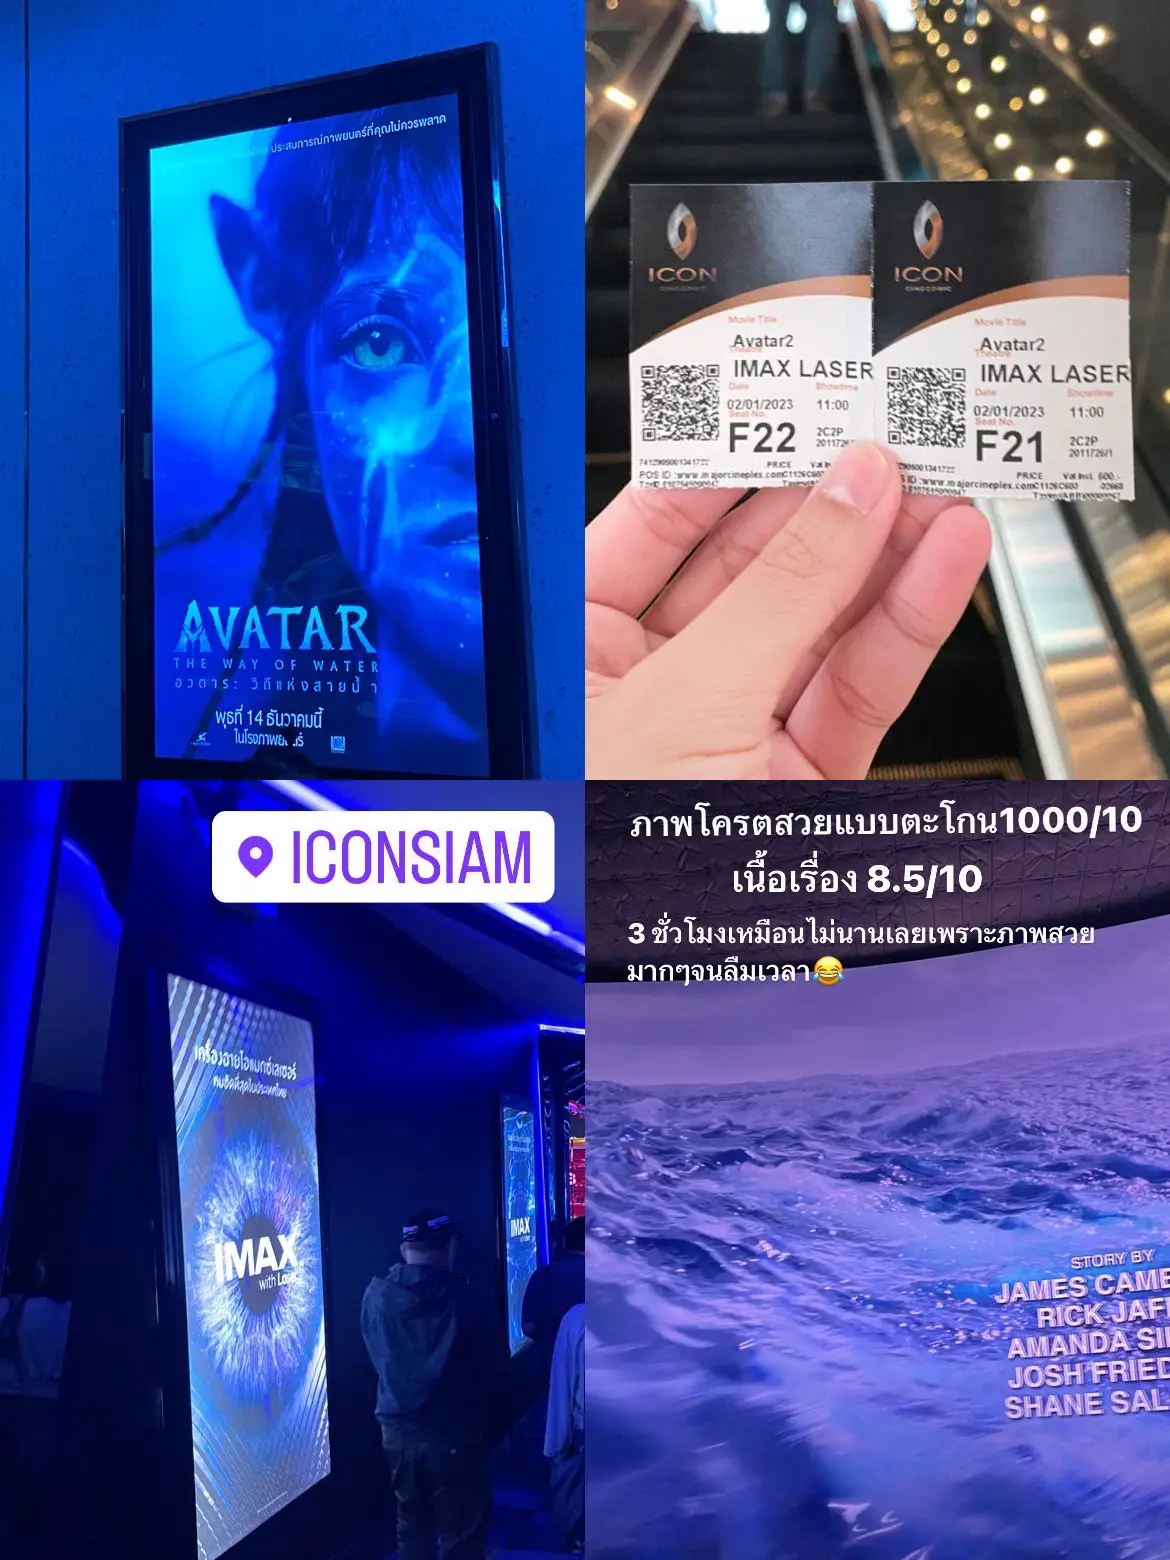 IMAX AVATAR iconsiam: Với công nghệ IMAX 3D, phim bom tấn Avatar nay đã được tái chiếu tại rạp chiếu bóng IMAX tại IconSiam. Điều này đồng nghĩa với việc bạn có cơ hội thưởng thức Avatar với chất lượng hình ảnh vượt trội hơn bao giờ hết - một trải nghiệm điện ảnh không thể bỏ qua.